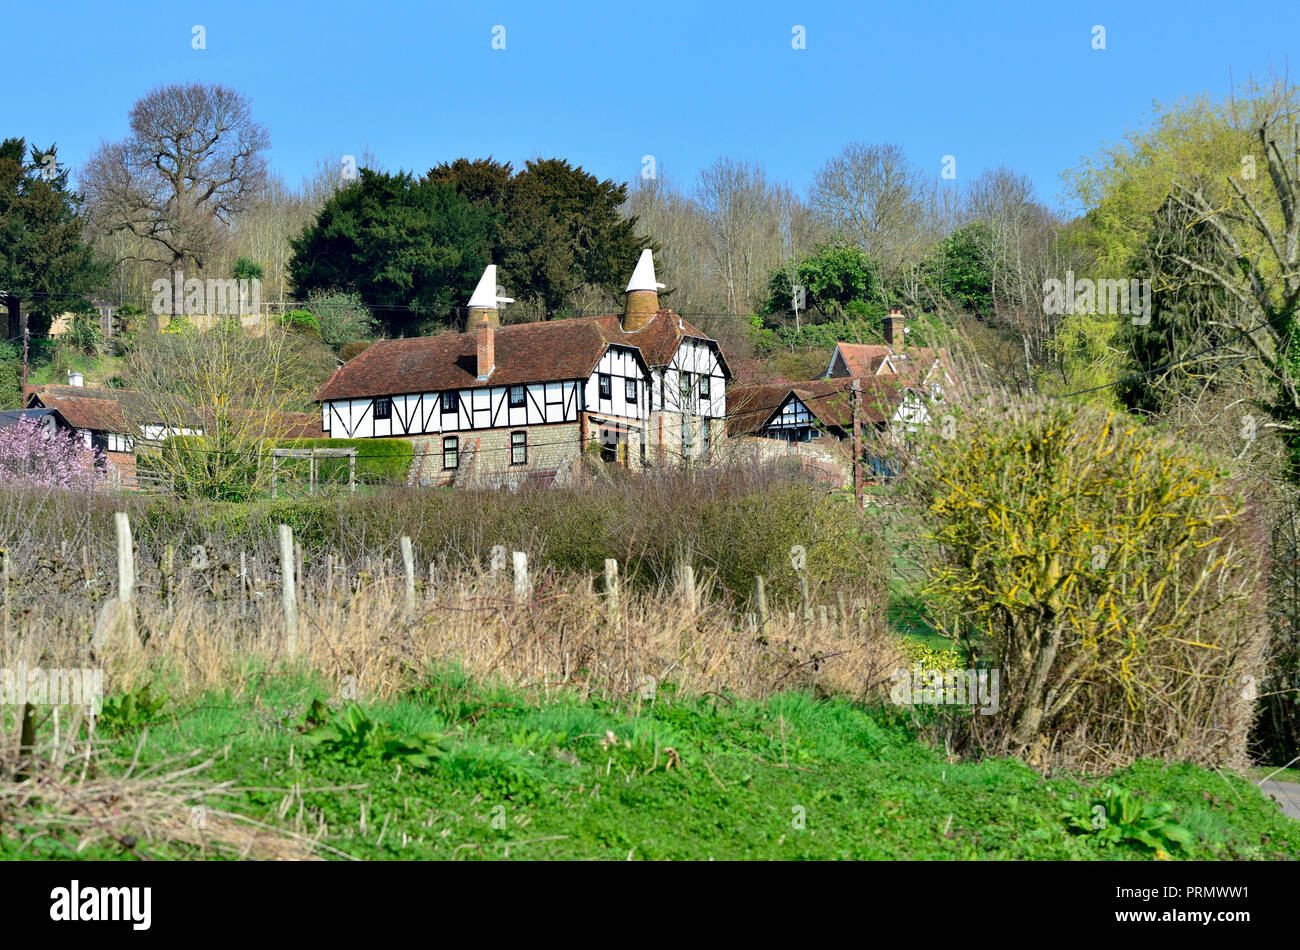 Convierte oast house, Boughton Monchelsea village, Kent, Inglaterra. Foto de stock